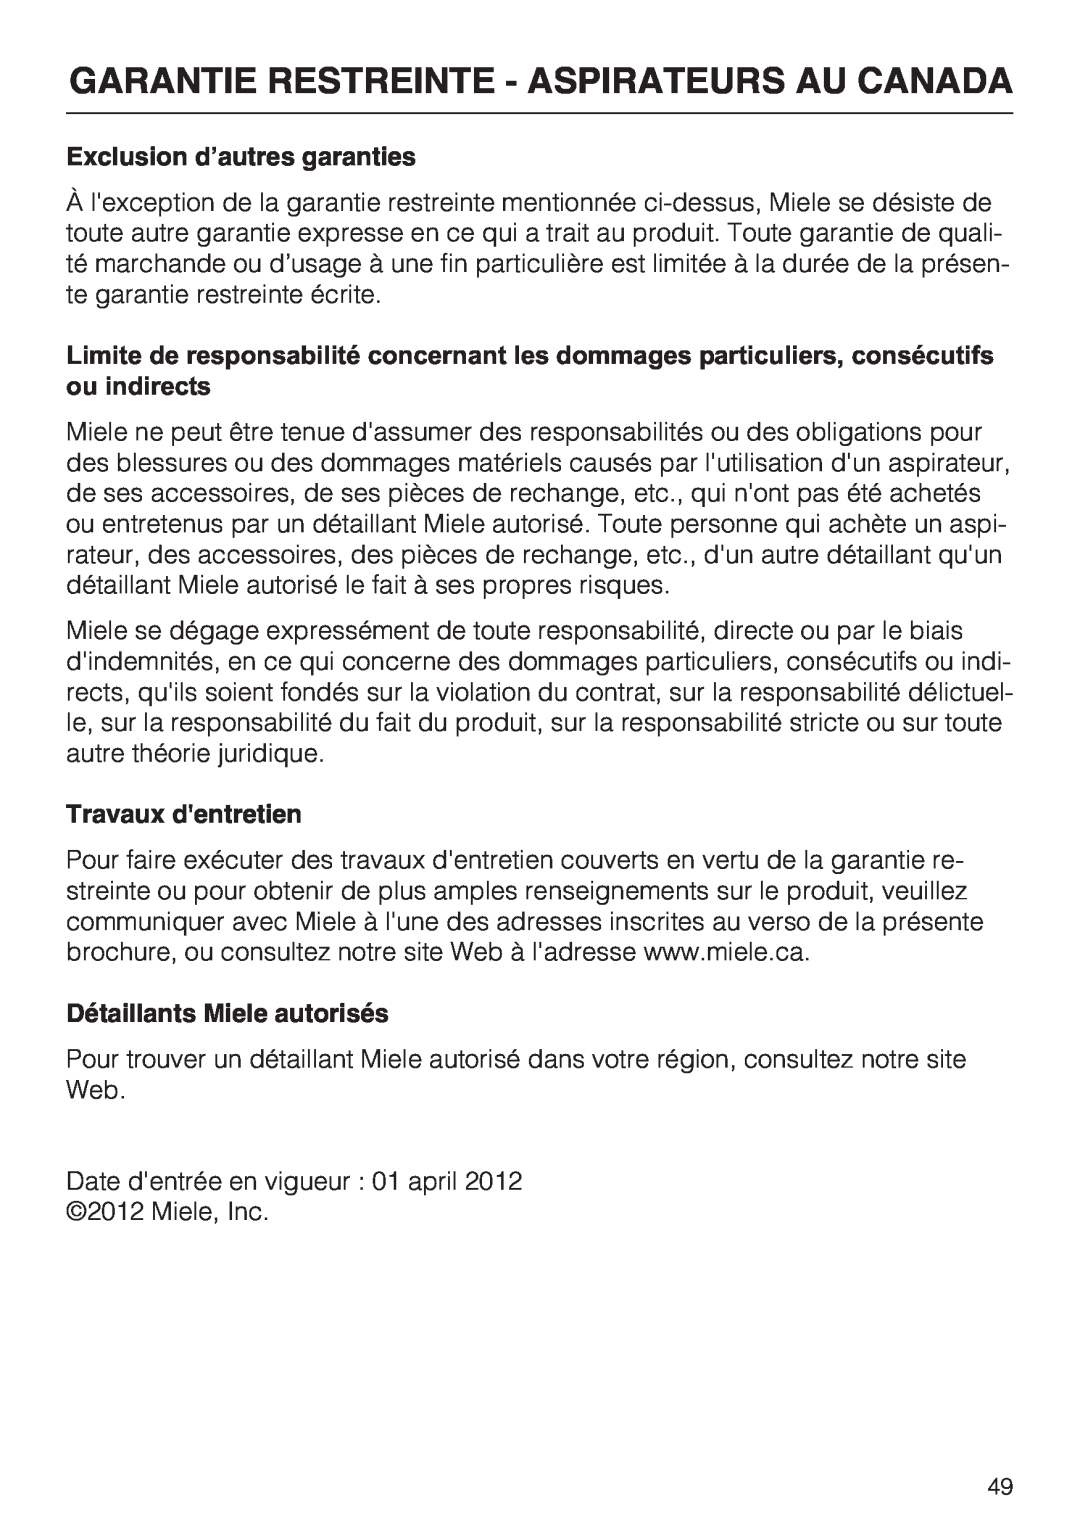 Miele S 8900 manual Exclusion d’autres garanties, Travaux dentretien, Détaillants Miele autorisés 